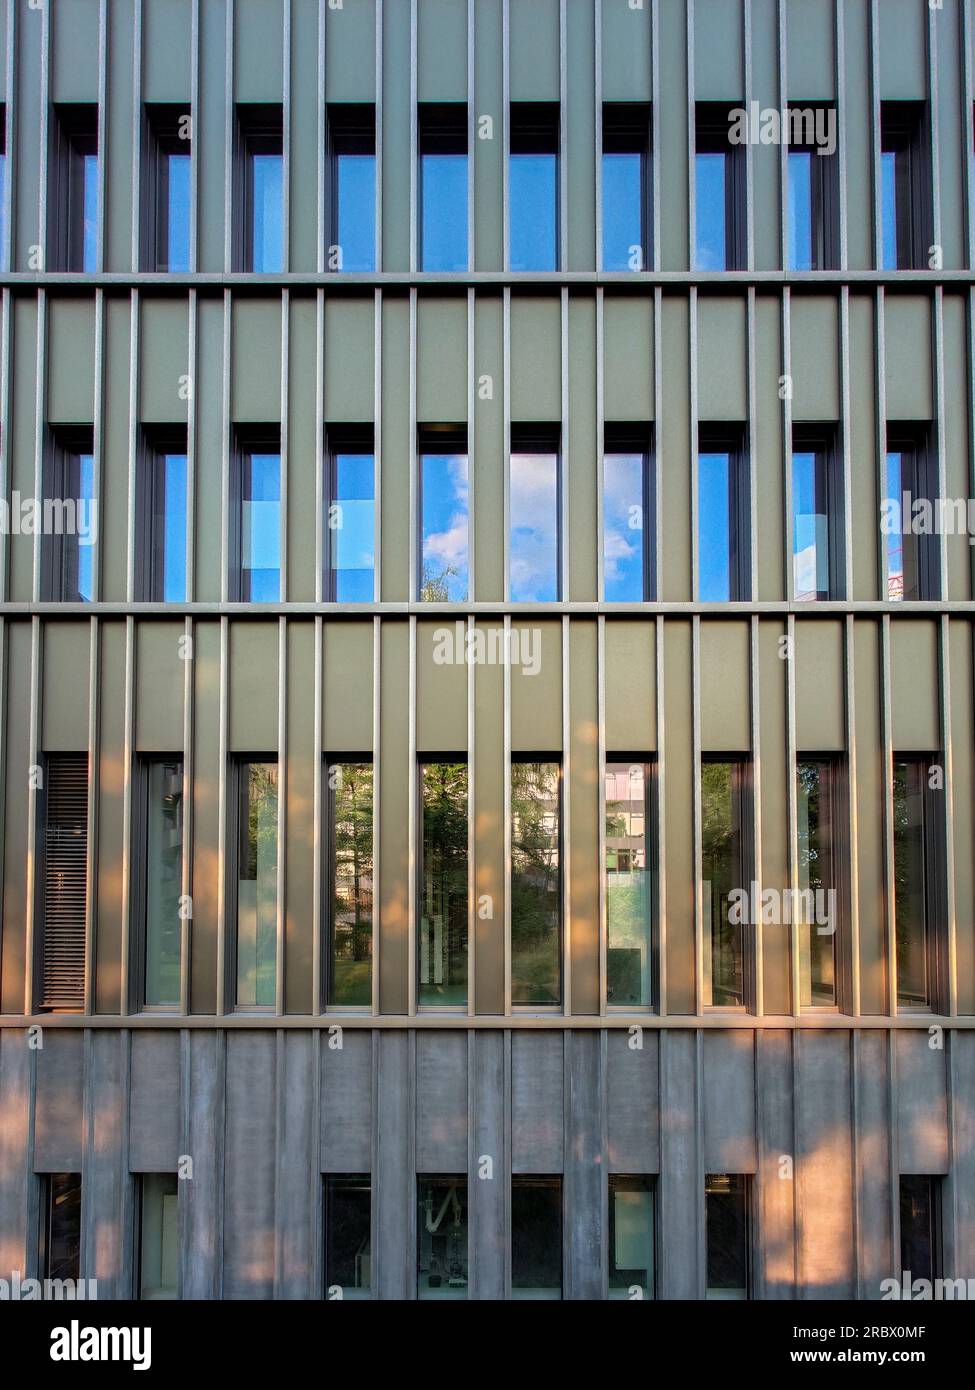 Modernes Architekturgebäude, Glaswand oder Fassade, keine Menschen. Stockfoto